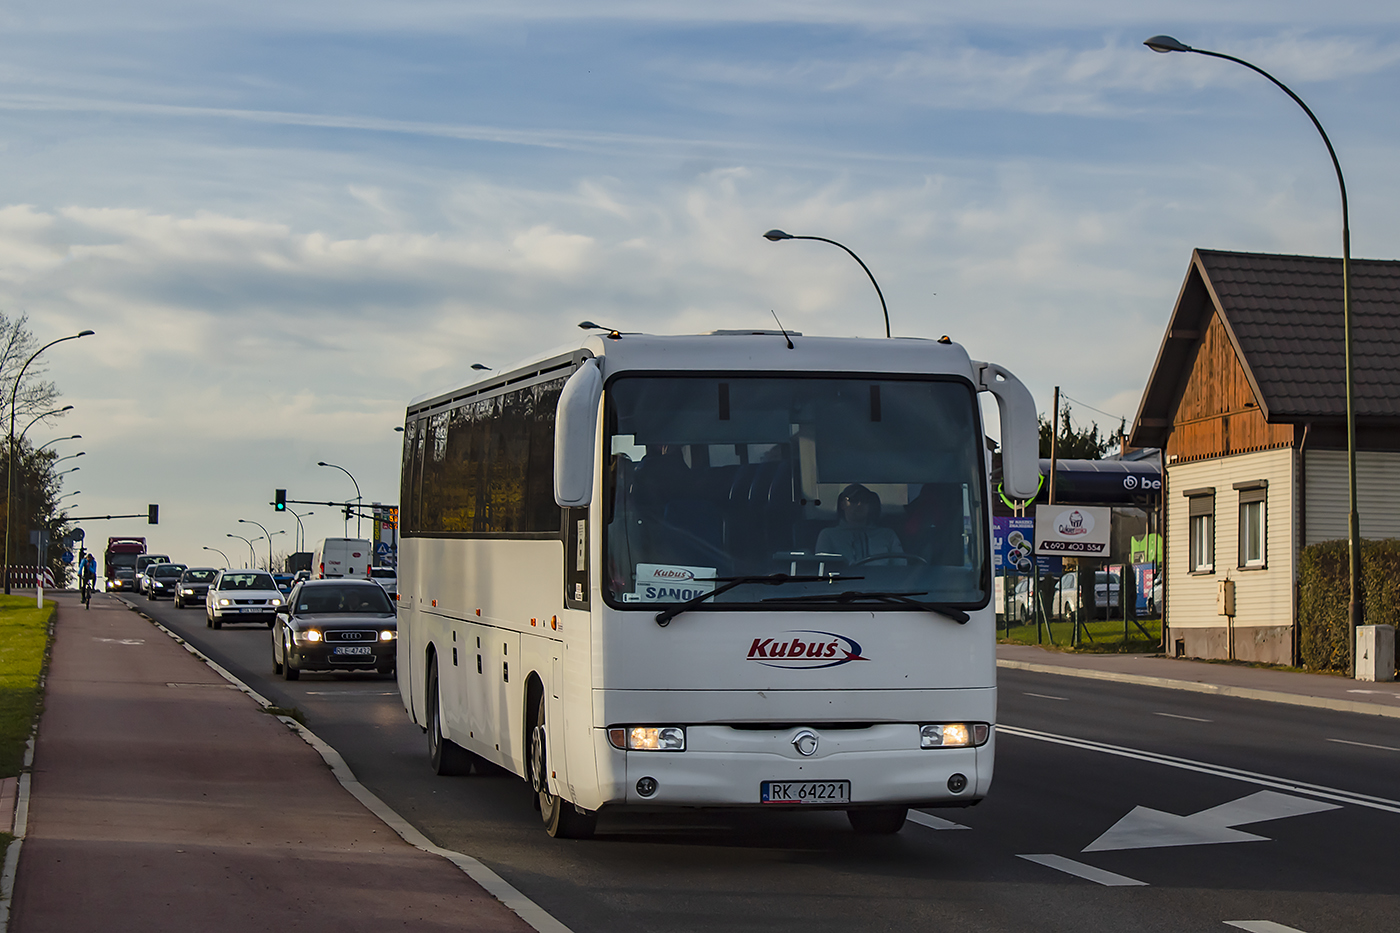 Krosno, Irisbus Iliade # RK 64221